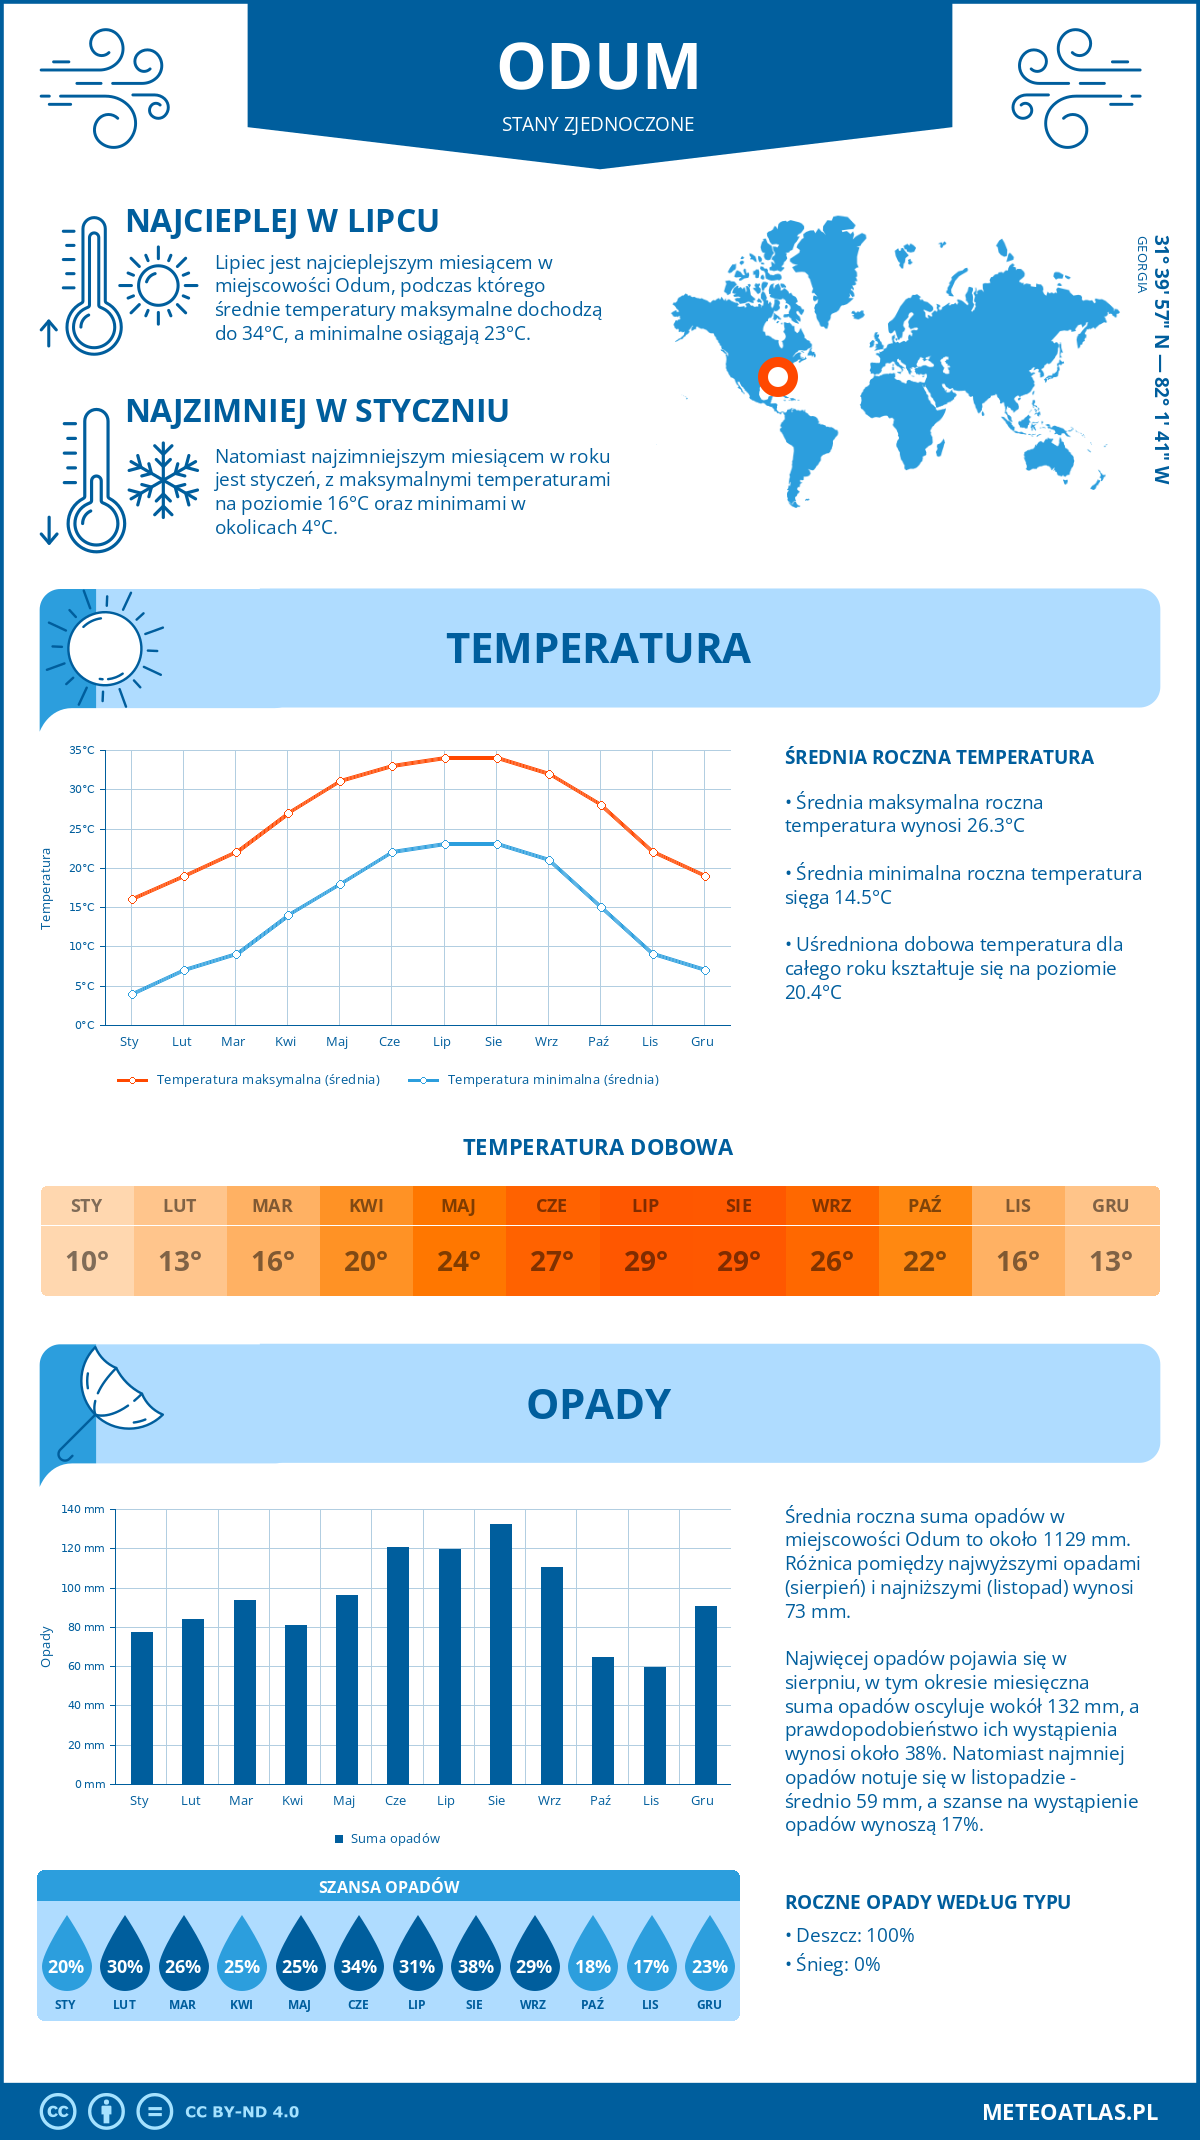 Pogoda Odum (Stany Zjednoczone). Temperatura oraz opady.